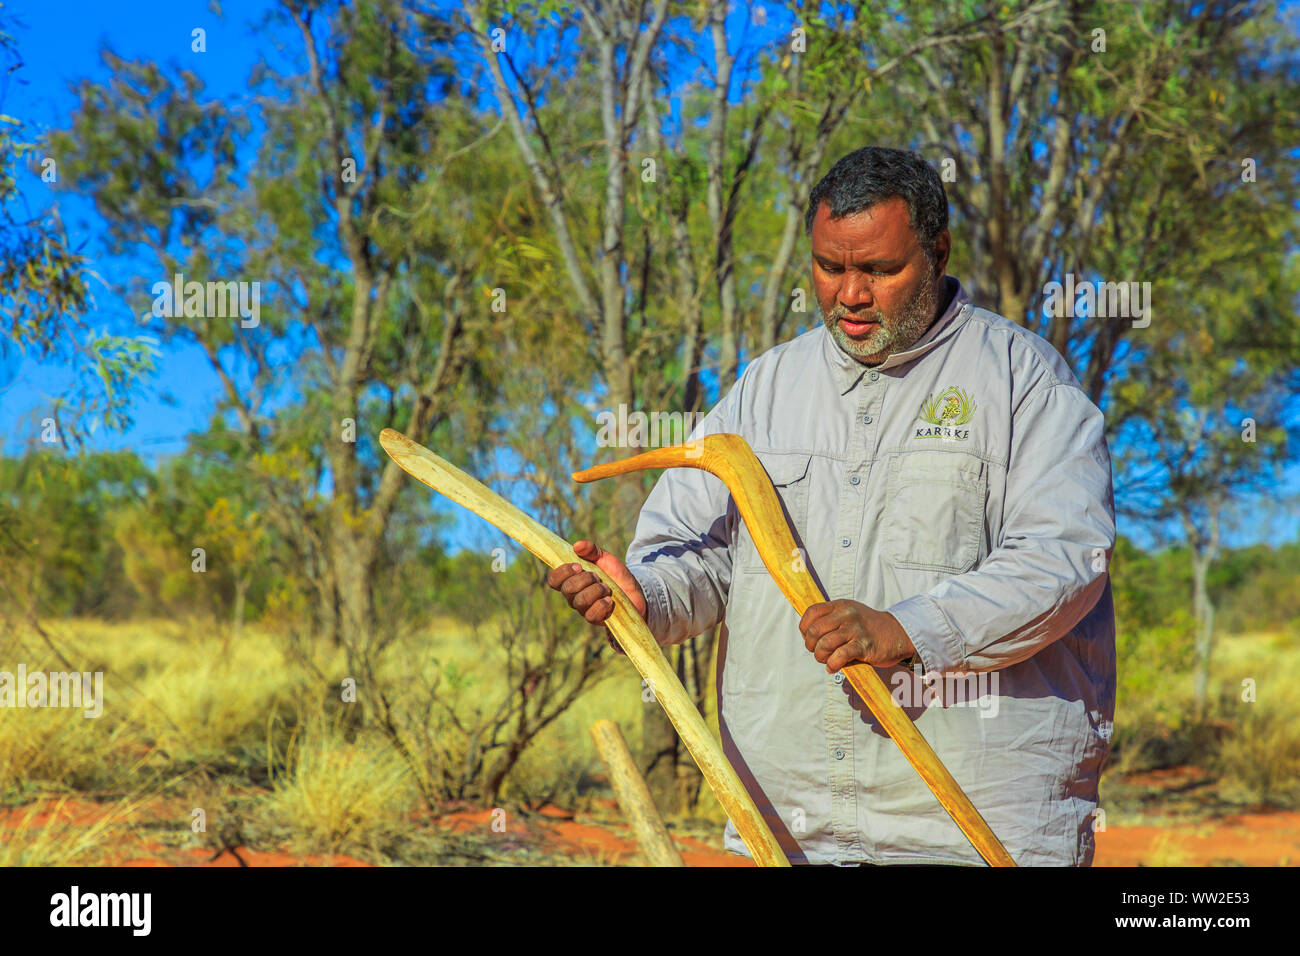 Stazione di Kings Creek, Territorio del Nord, Australia - 21 AGO 2019: aborigeni australiani azienda uomo un aborigeno arma di boomerang utilizzato da Luritja Foto Stock